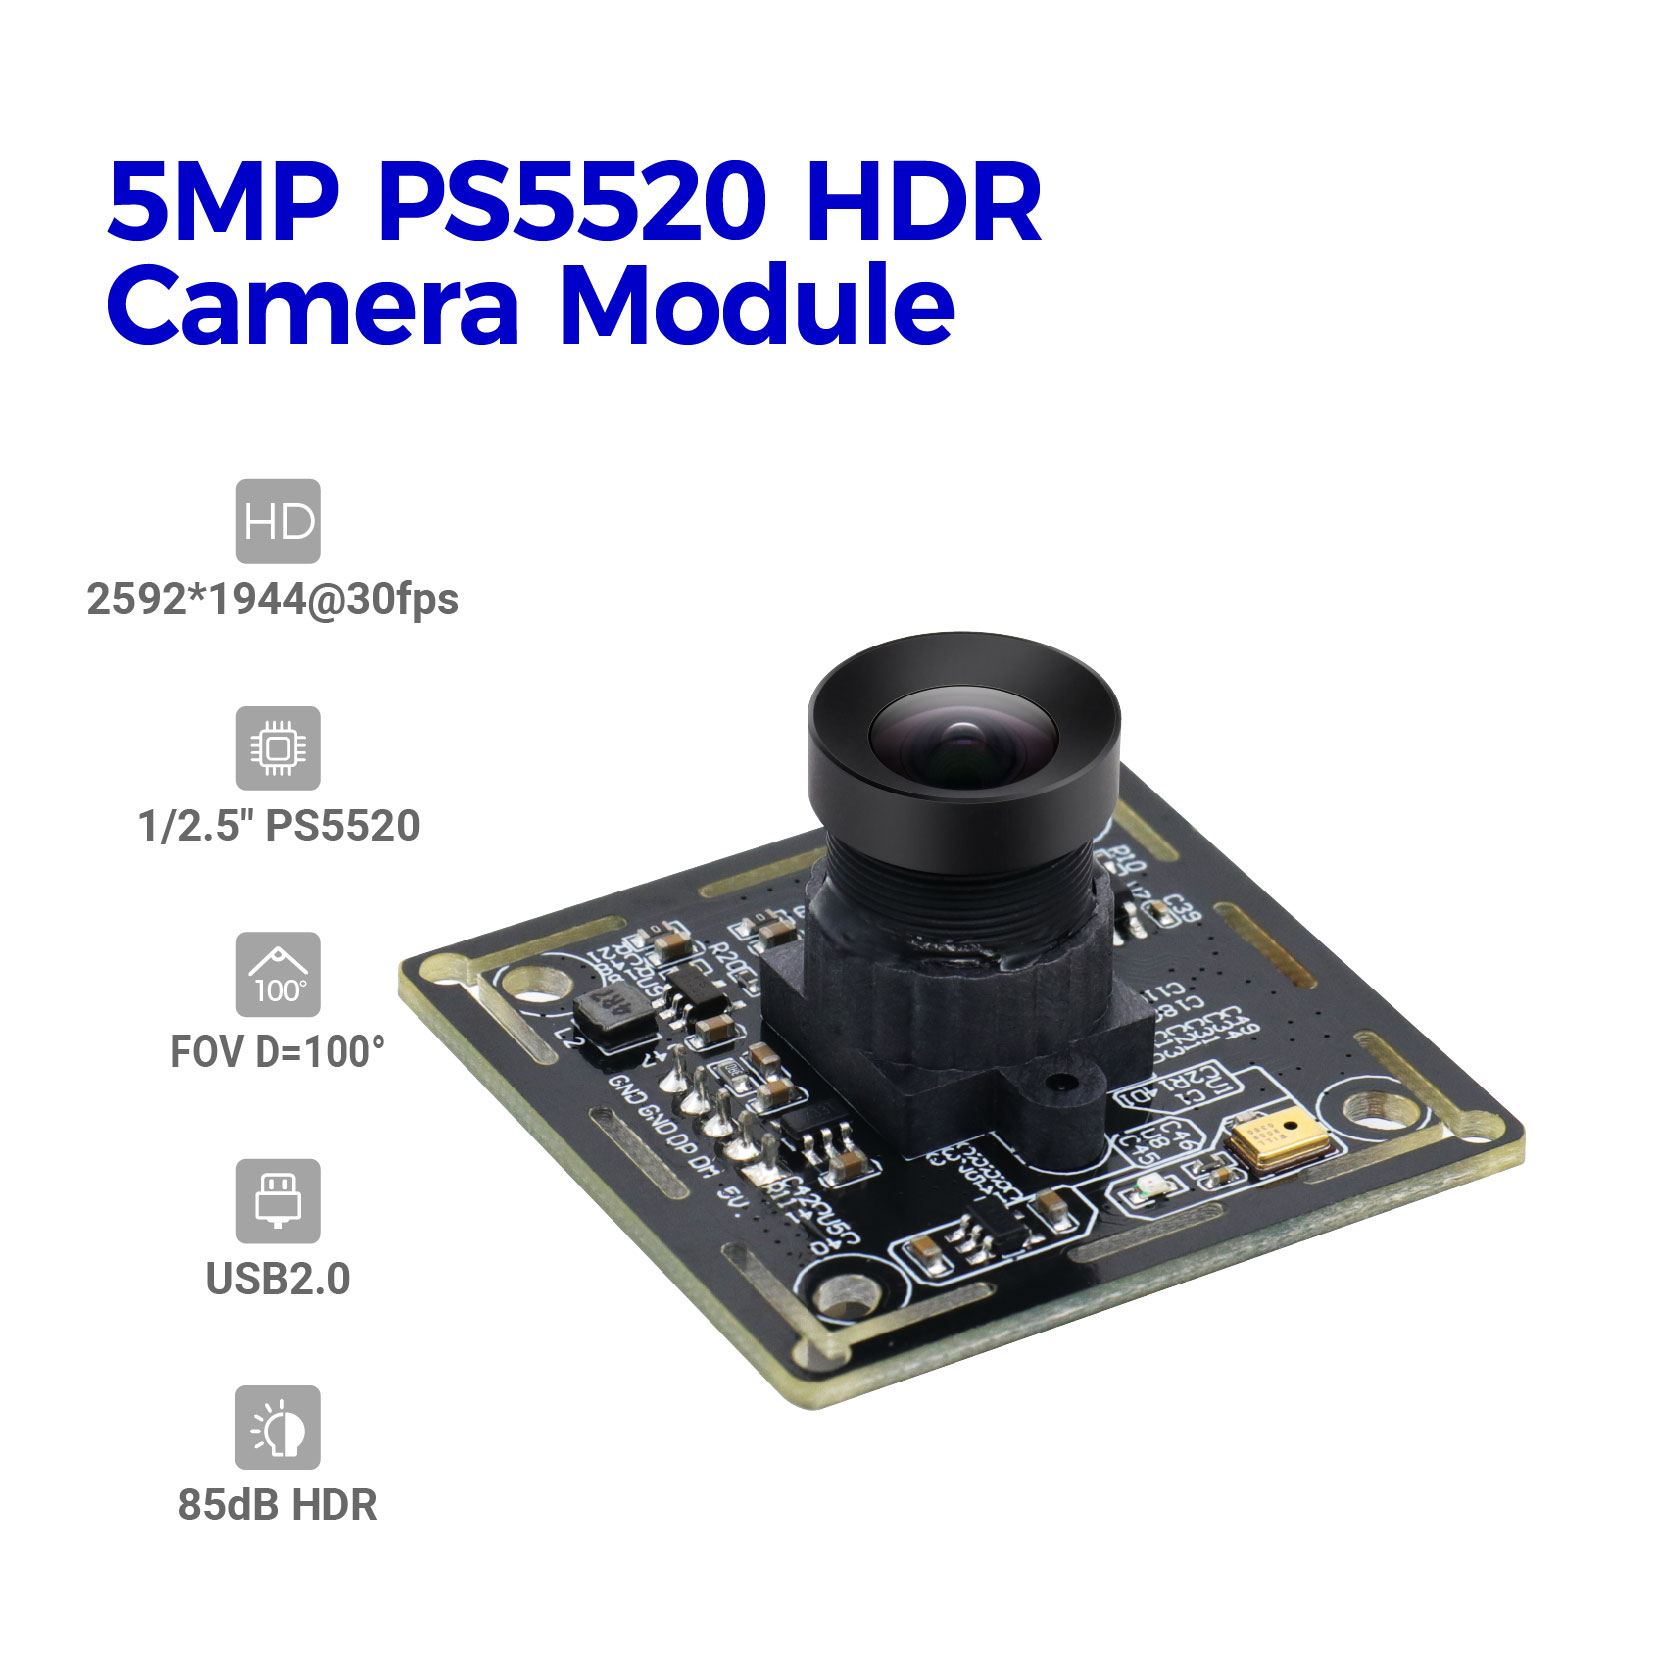 5MP PS5520 HDR ಕ್ಯಾಮೆರಾ ಮಾಡ್ಯೂಲ್